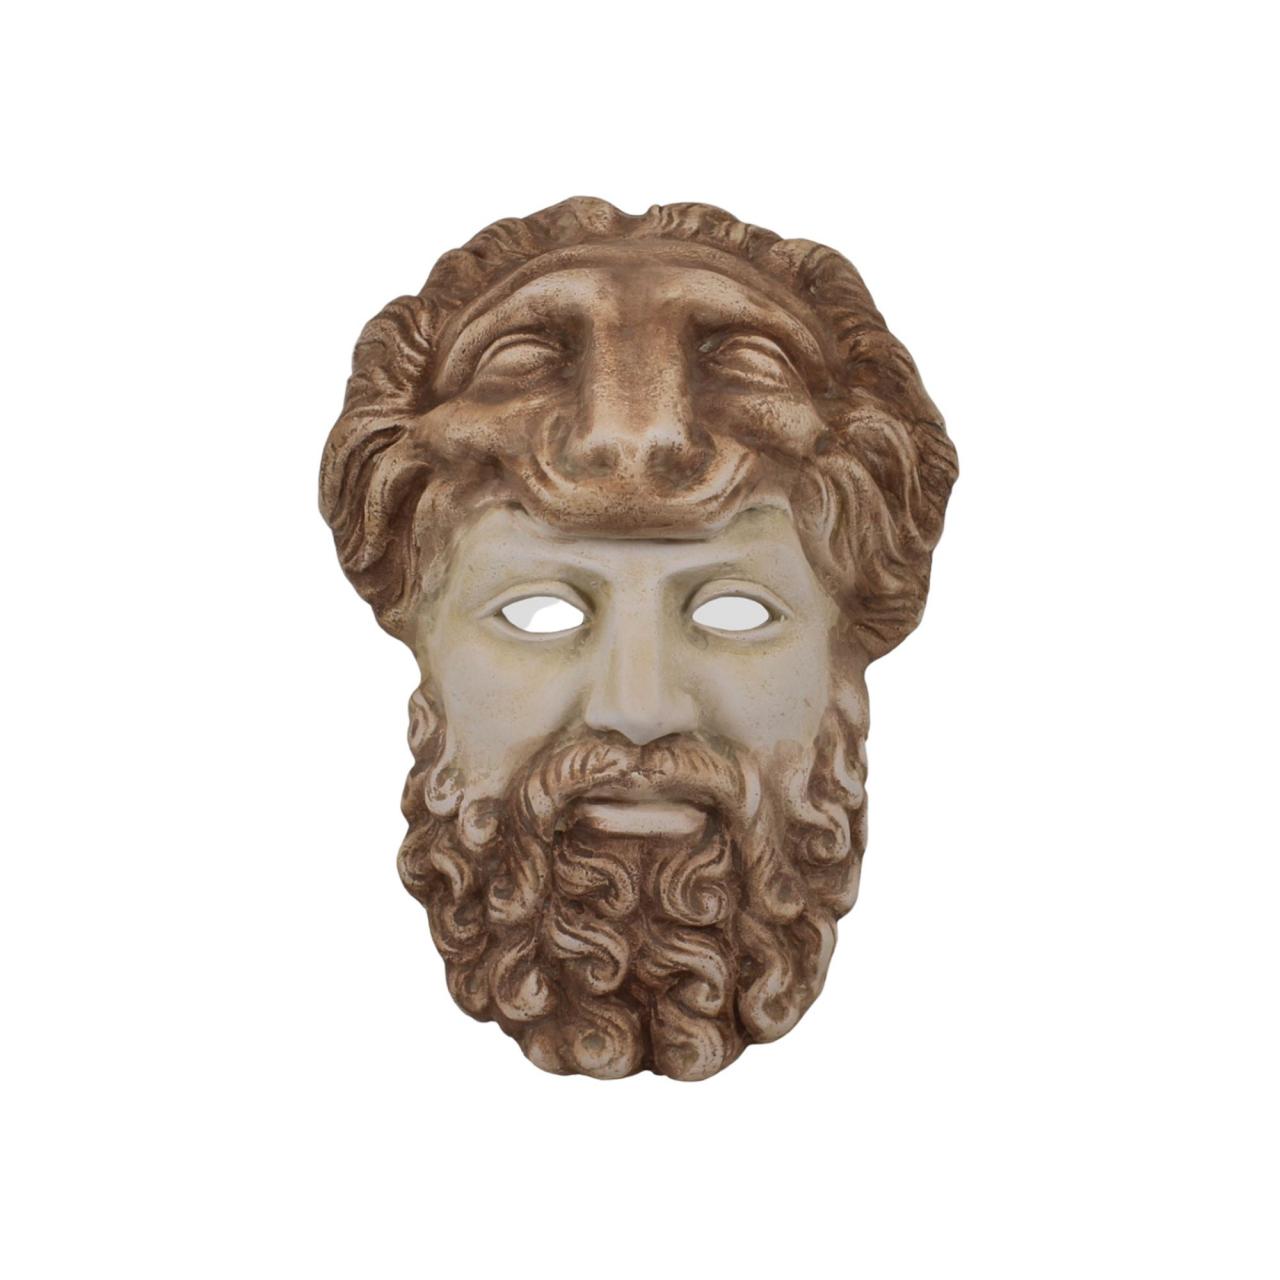 Hercules Demigod Bas Relief Wall Mask Plaster Sculpture